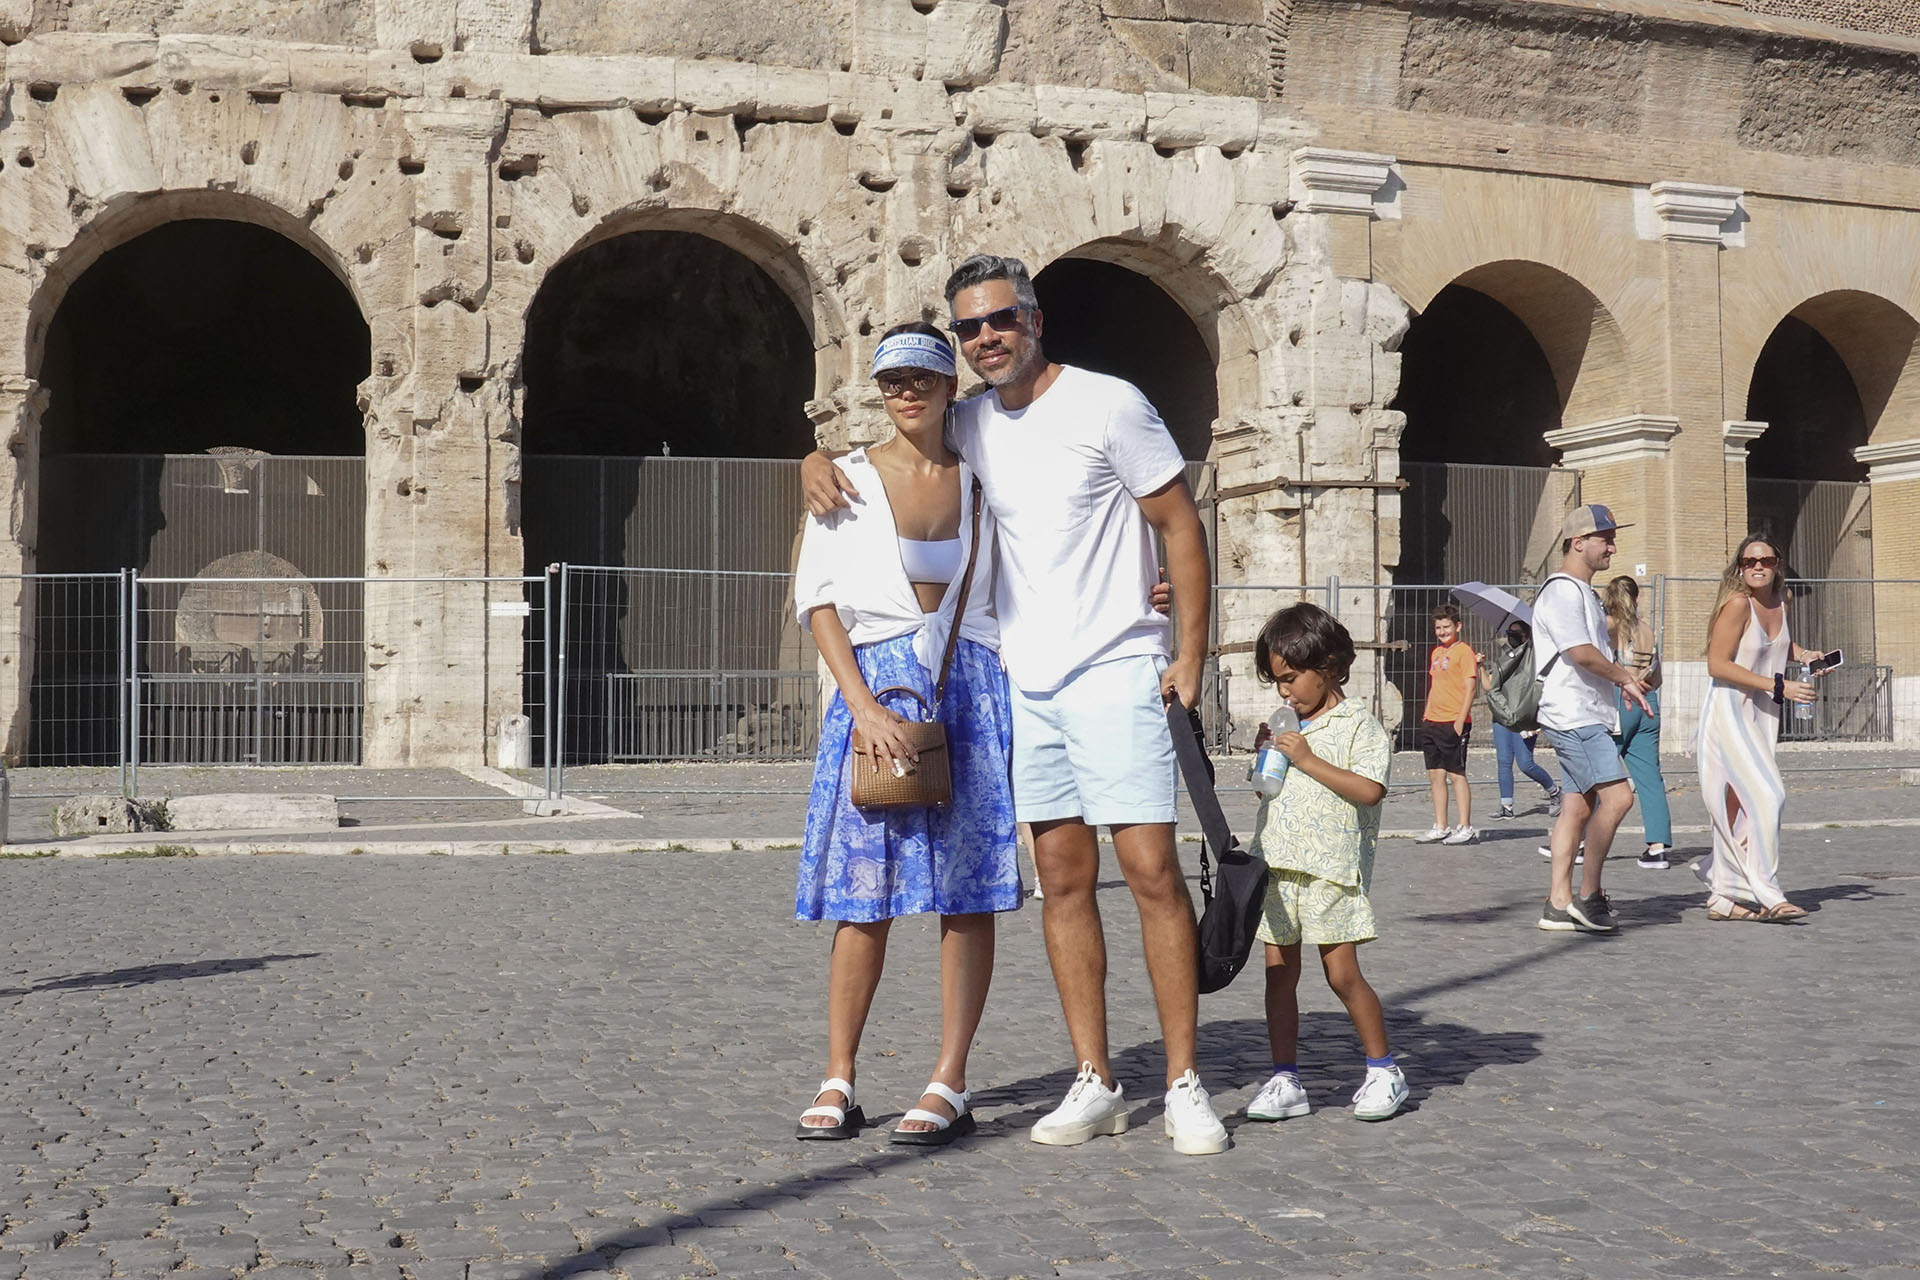 Vacaciones familiares. Jessica Alba viajó con su esposo e hijos a Roma, Italia. Allí, recorrieron los distintos puntos de atracciones turísticas y también pasearon y conocieron lujosos restaurantes (Fotos: The Grosby Group)